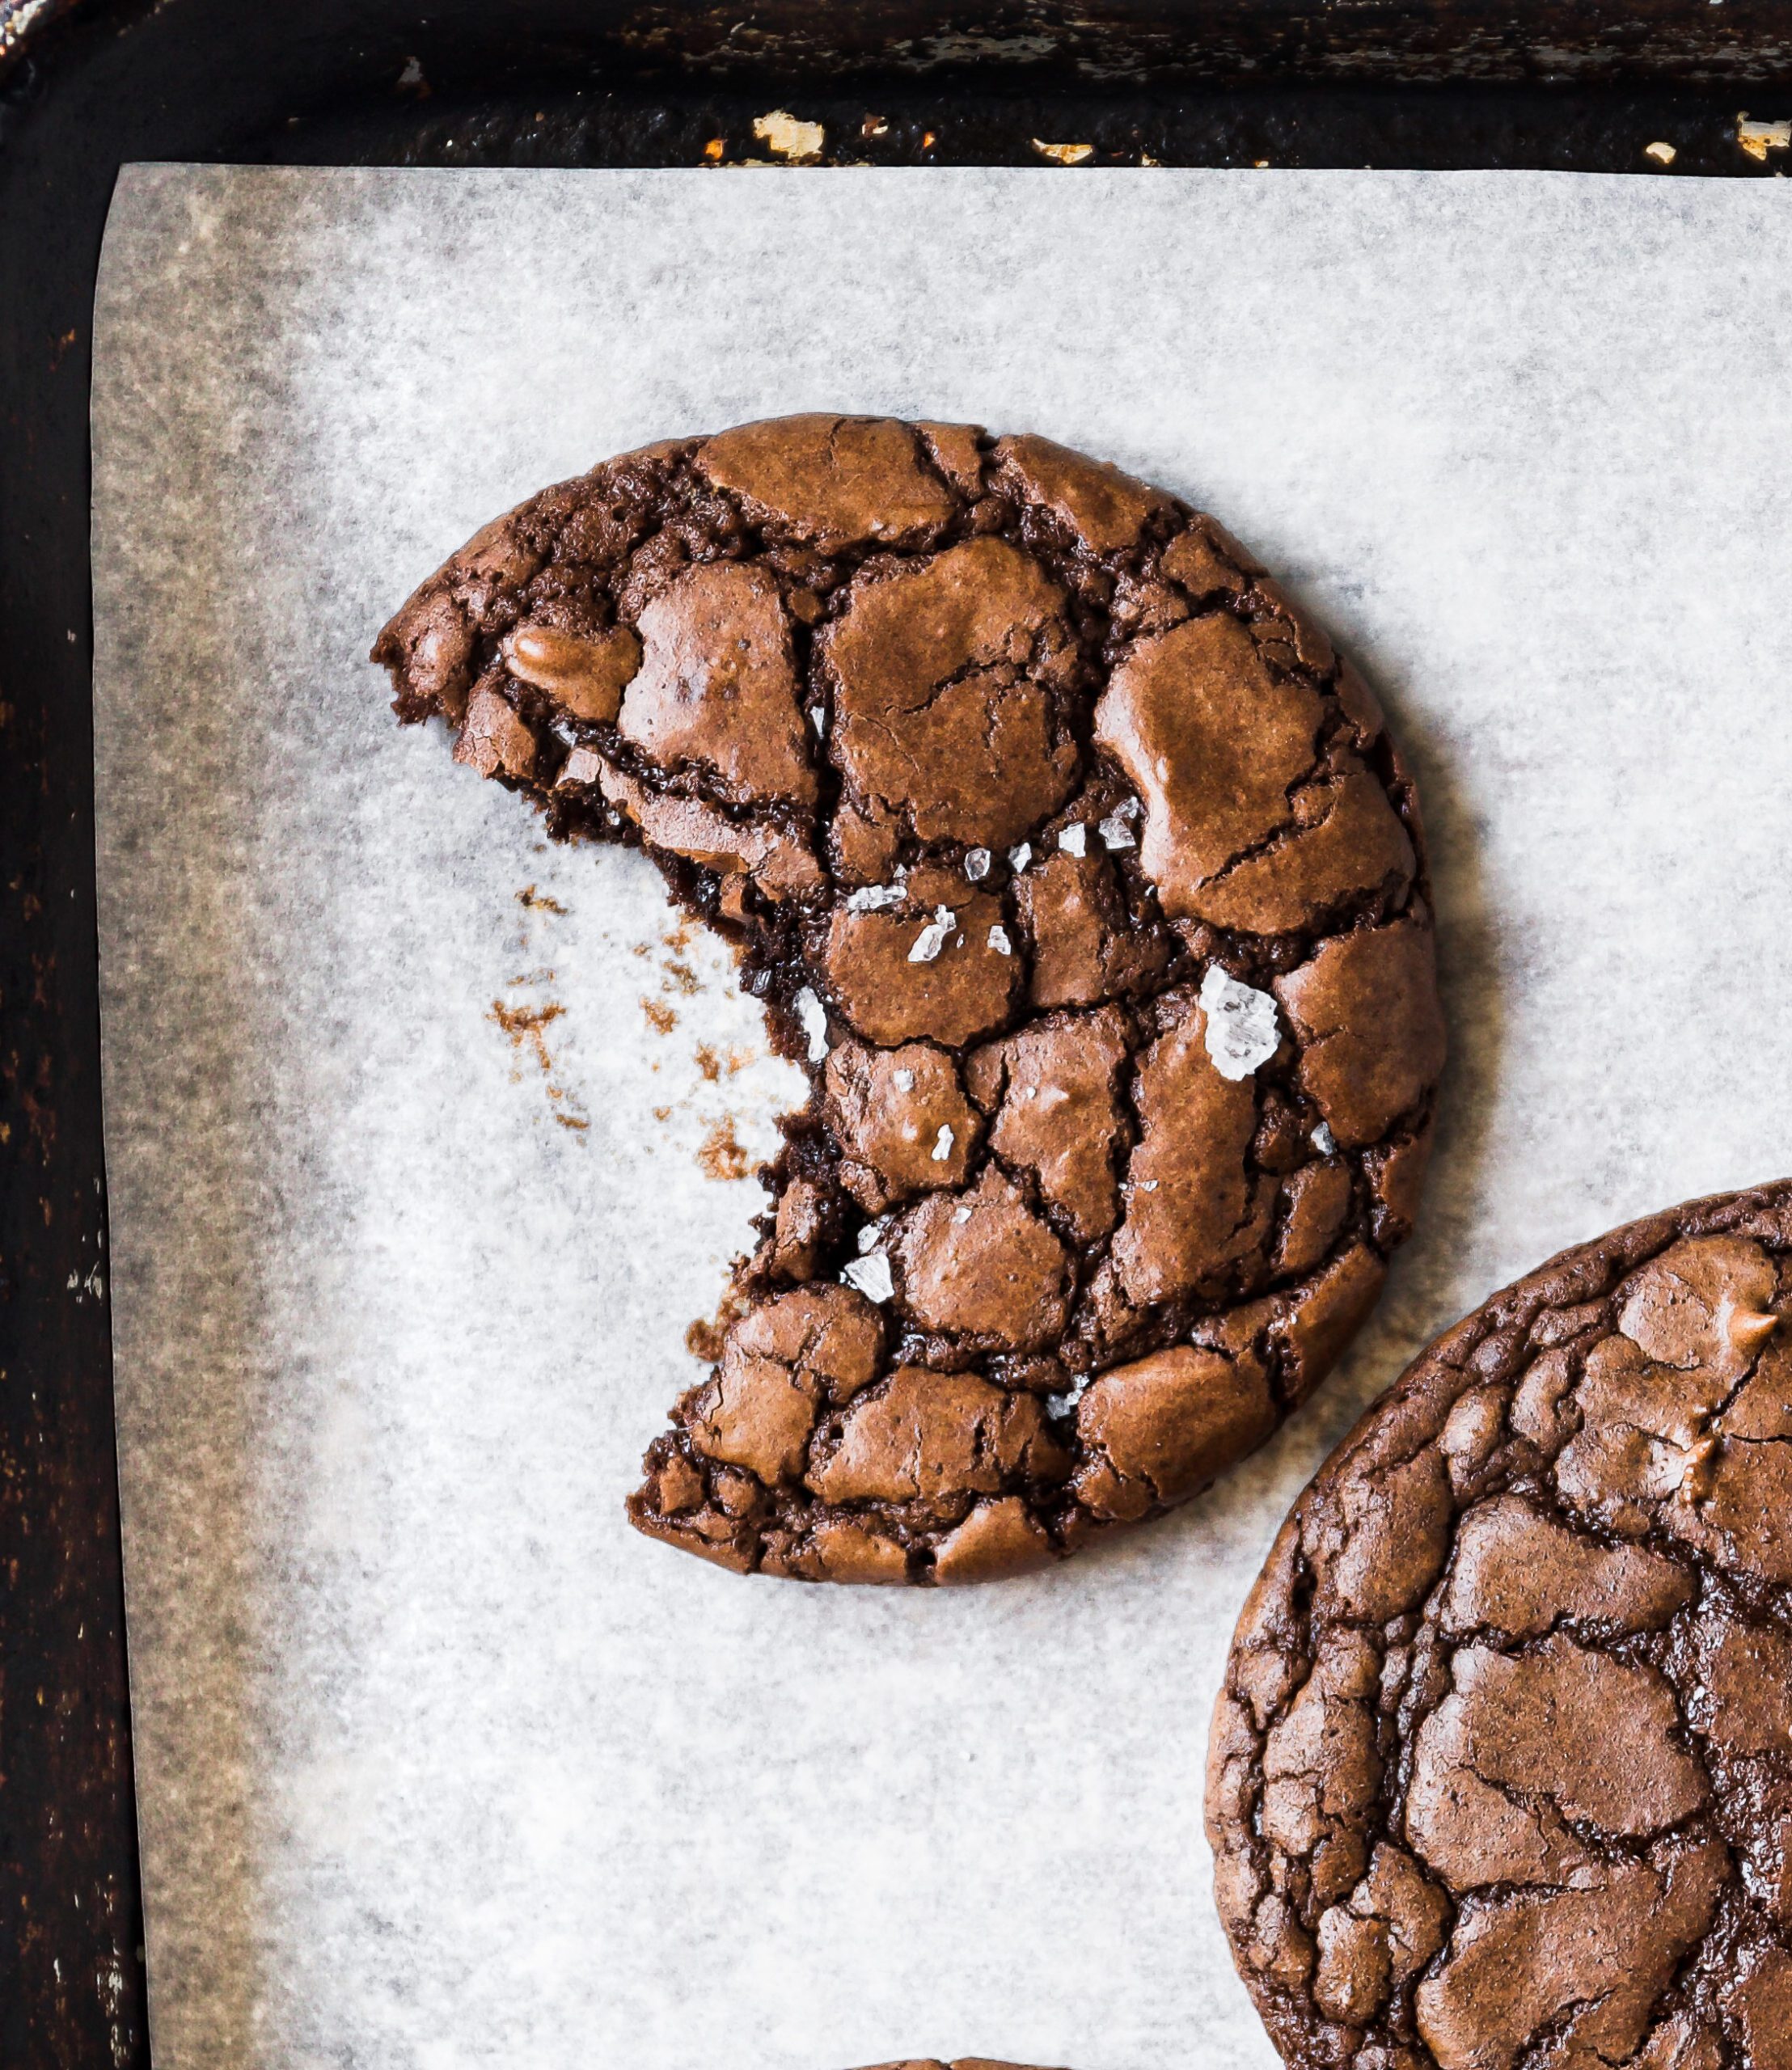 Top 5 Best Cookie Scoop In 2023: Cookie Scoop Set On , Top Review Cookie  Scoop On ! 